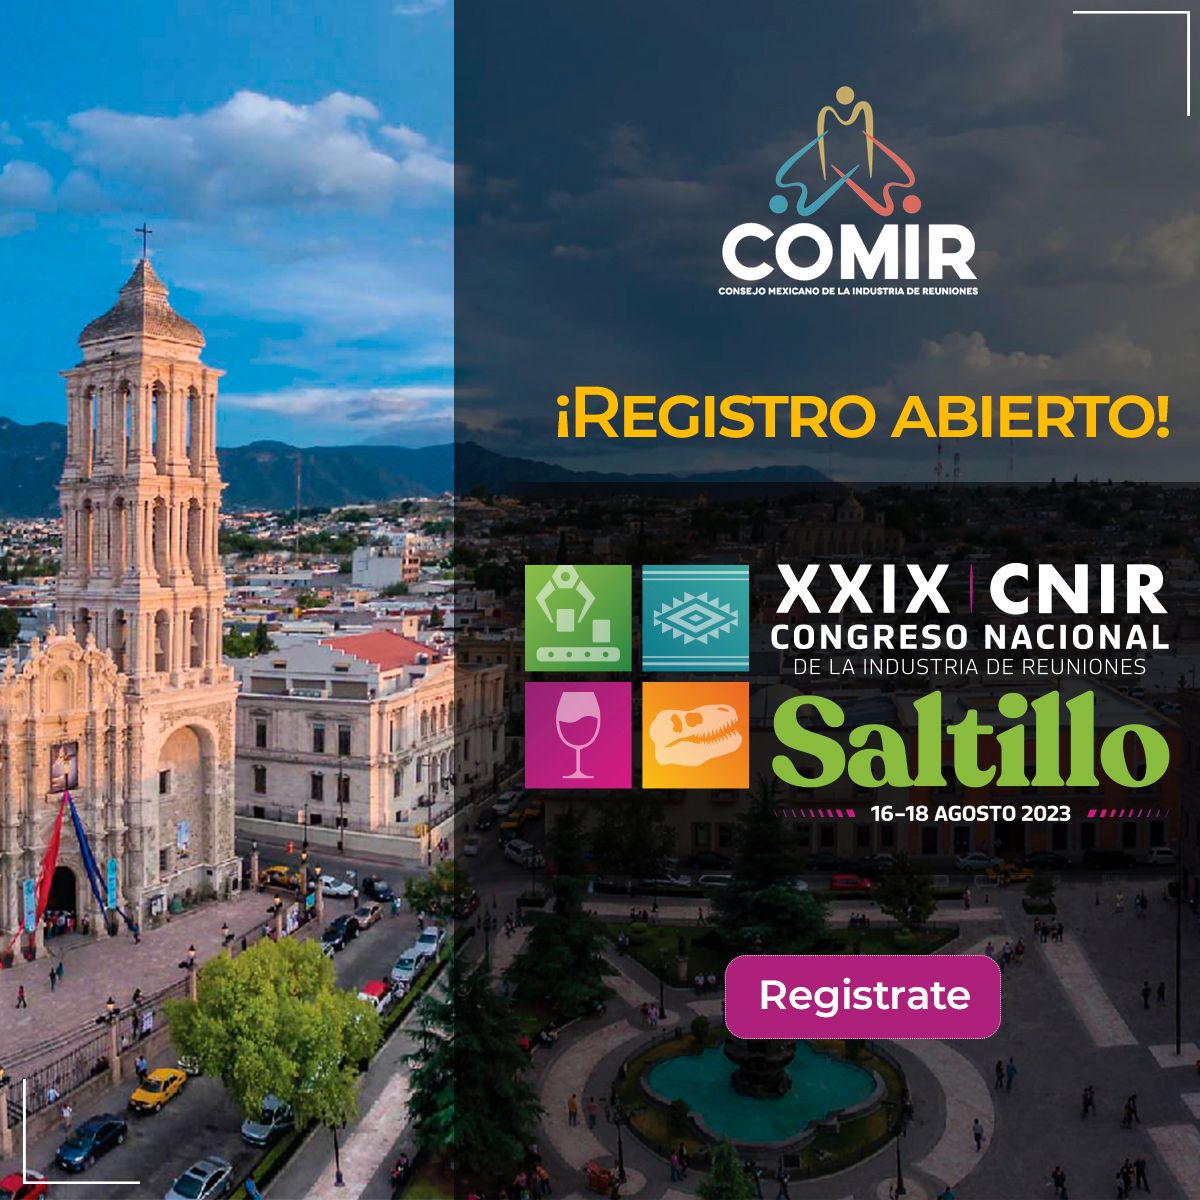 ¿Ya te registraste al #CNIR2023?

¡Nos vemos en #Saltillo!
Regístrate aquí: registro.comir.ahmreg.com

@COMIR_ #CongresoCNIR2023 #PCOMM #ElValorDeNuestraCapacitación #ElValorDeNuestraGrandeza
.
.
#industriadereuniones #turismodereuniones #meetingplanners #eventos2023